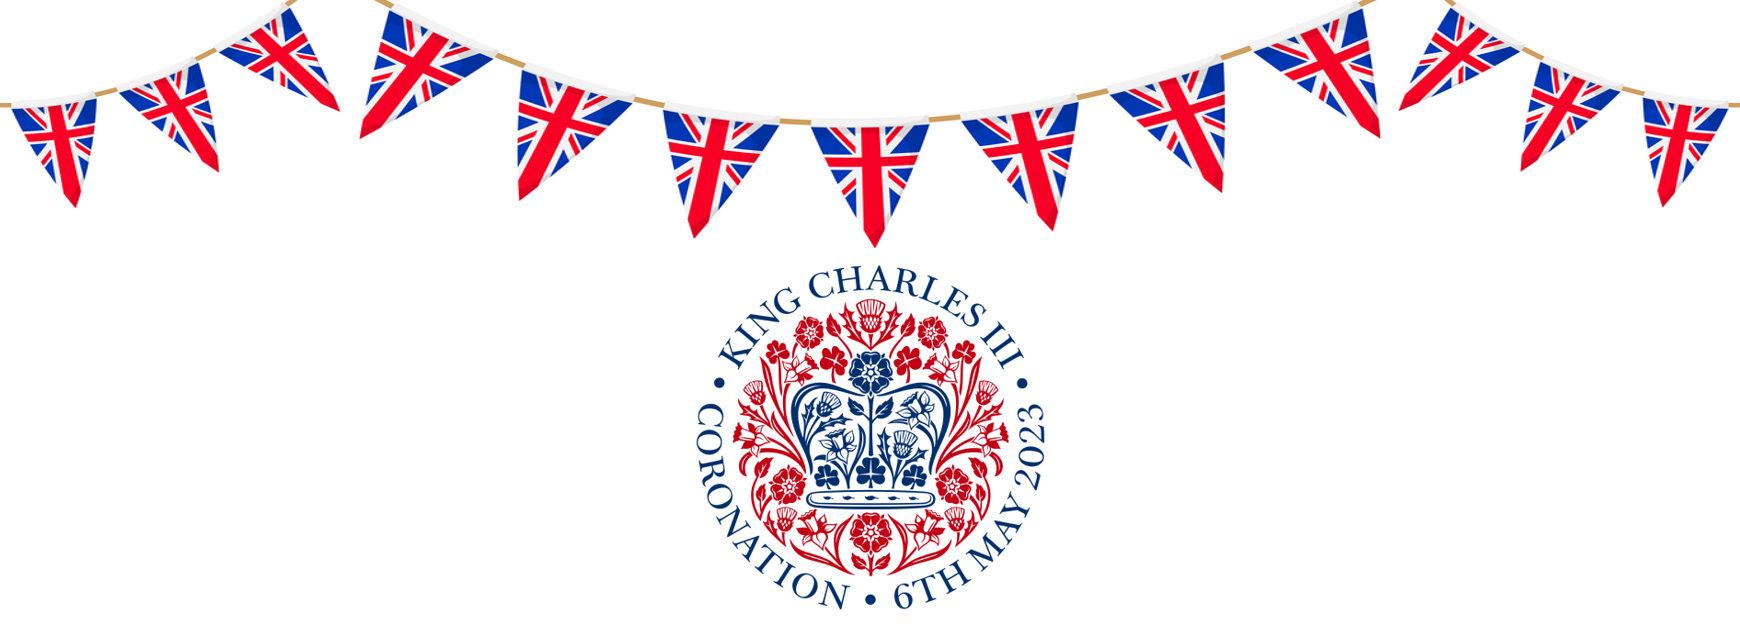 King charles 3 Coronation decorative banner 26th May 2023